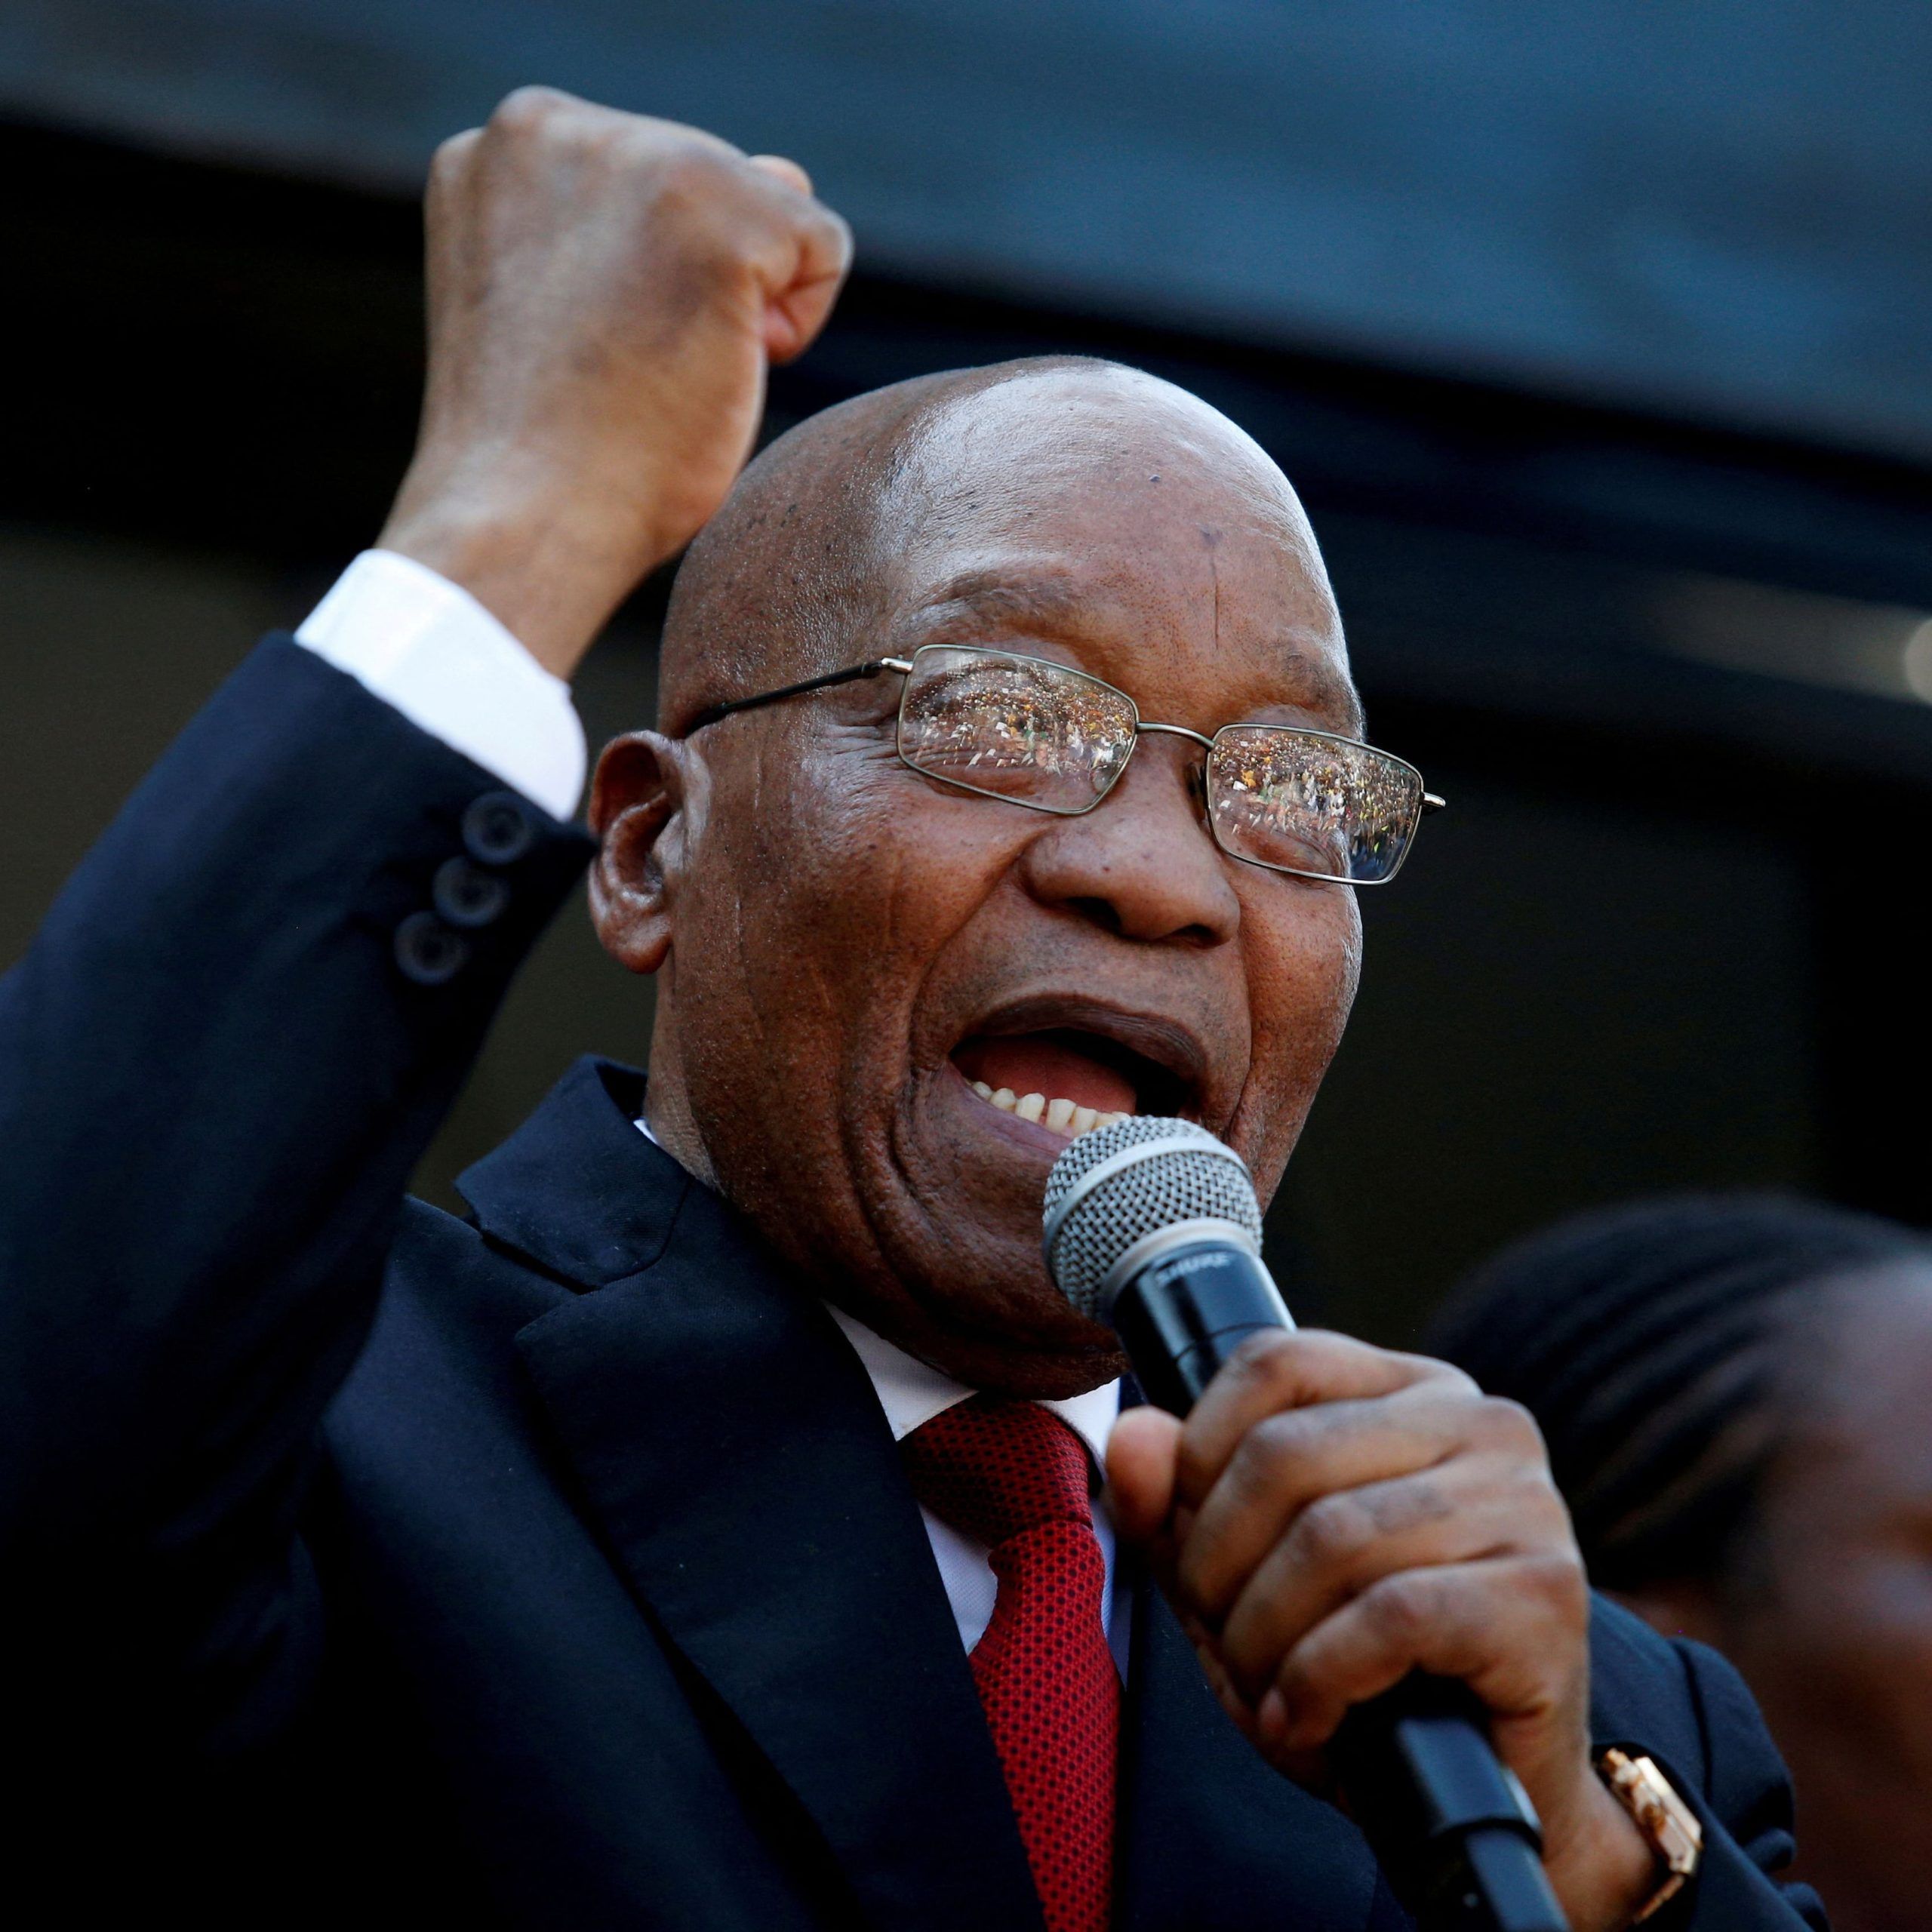 La Comisión Electoral de Sudáfrica rechazó la postulación del ex presidente Jacob Zuma, condenado en una causa por corrupción